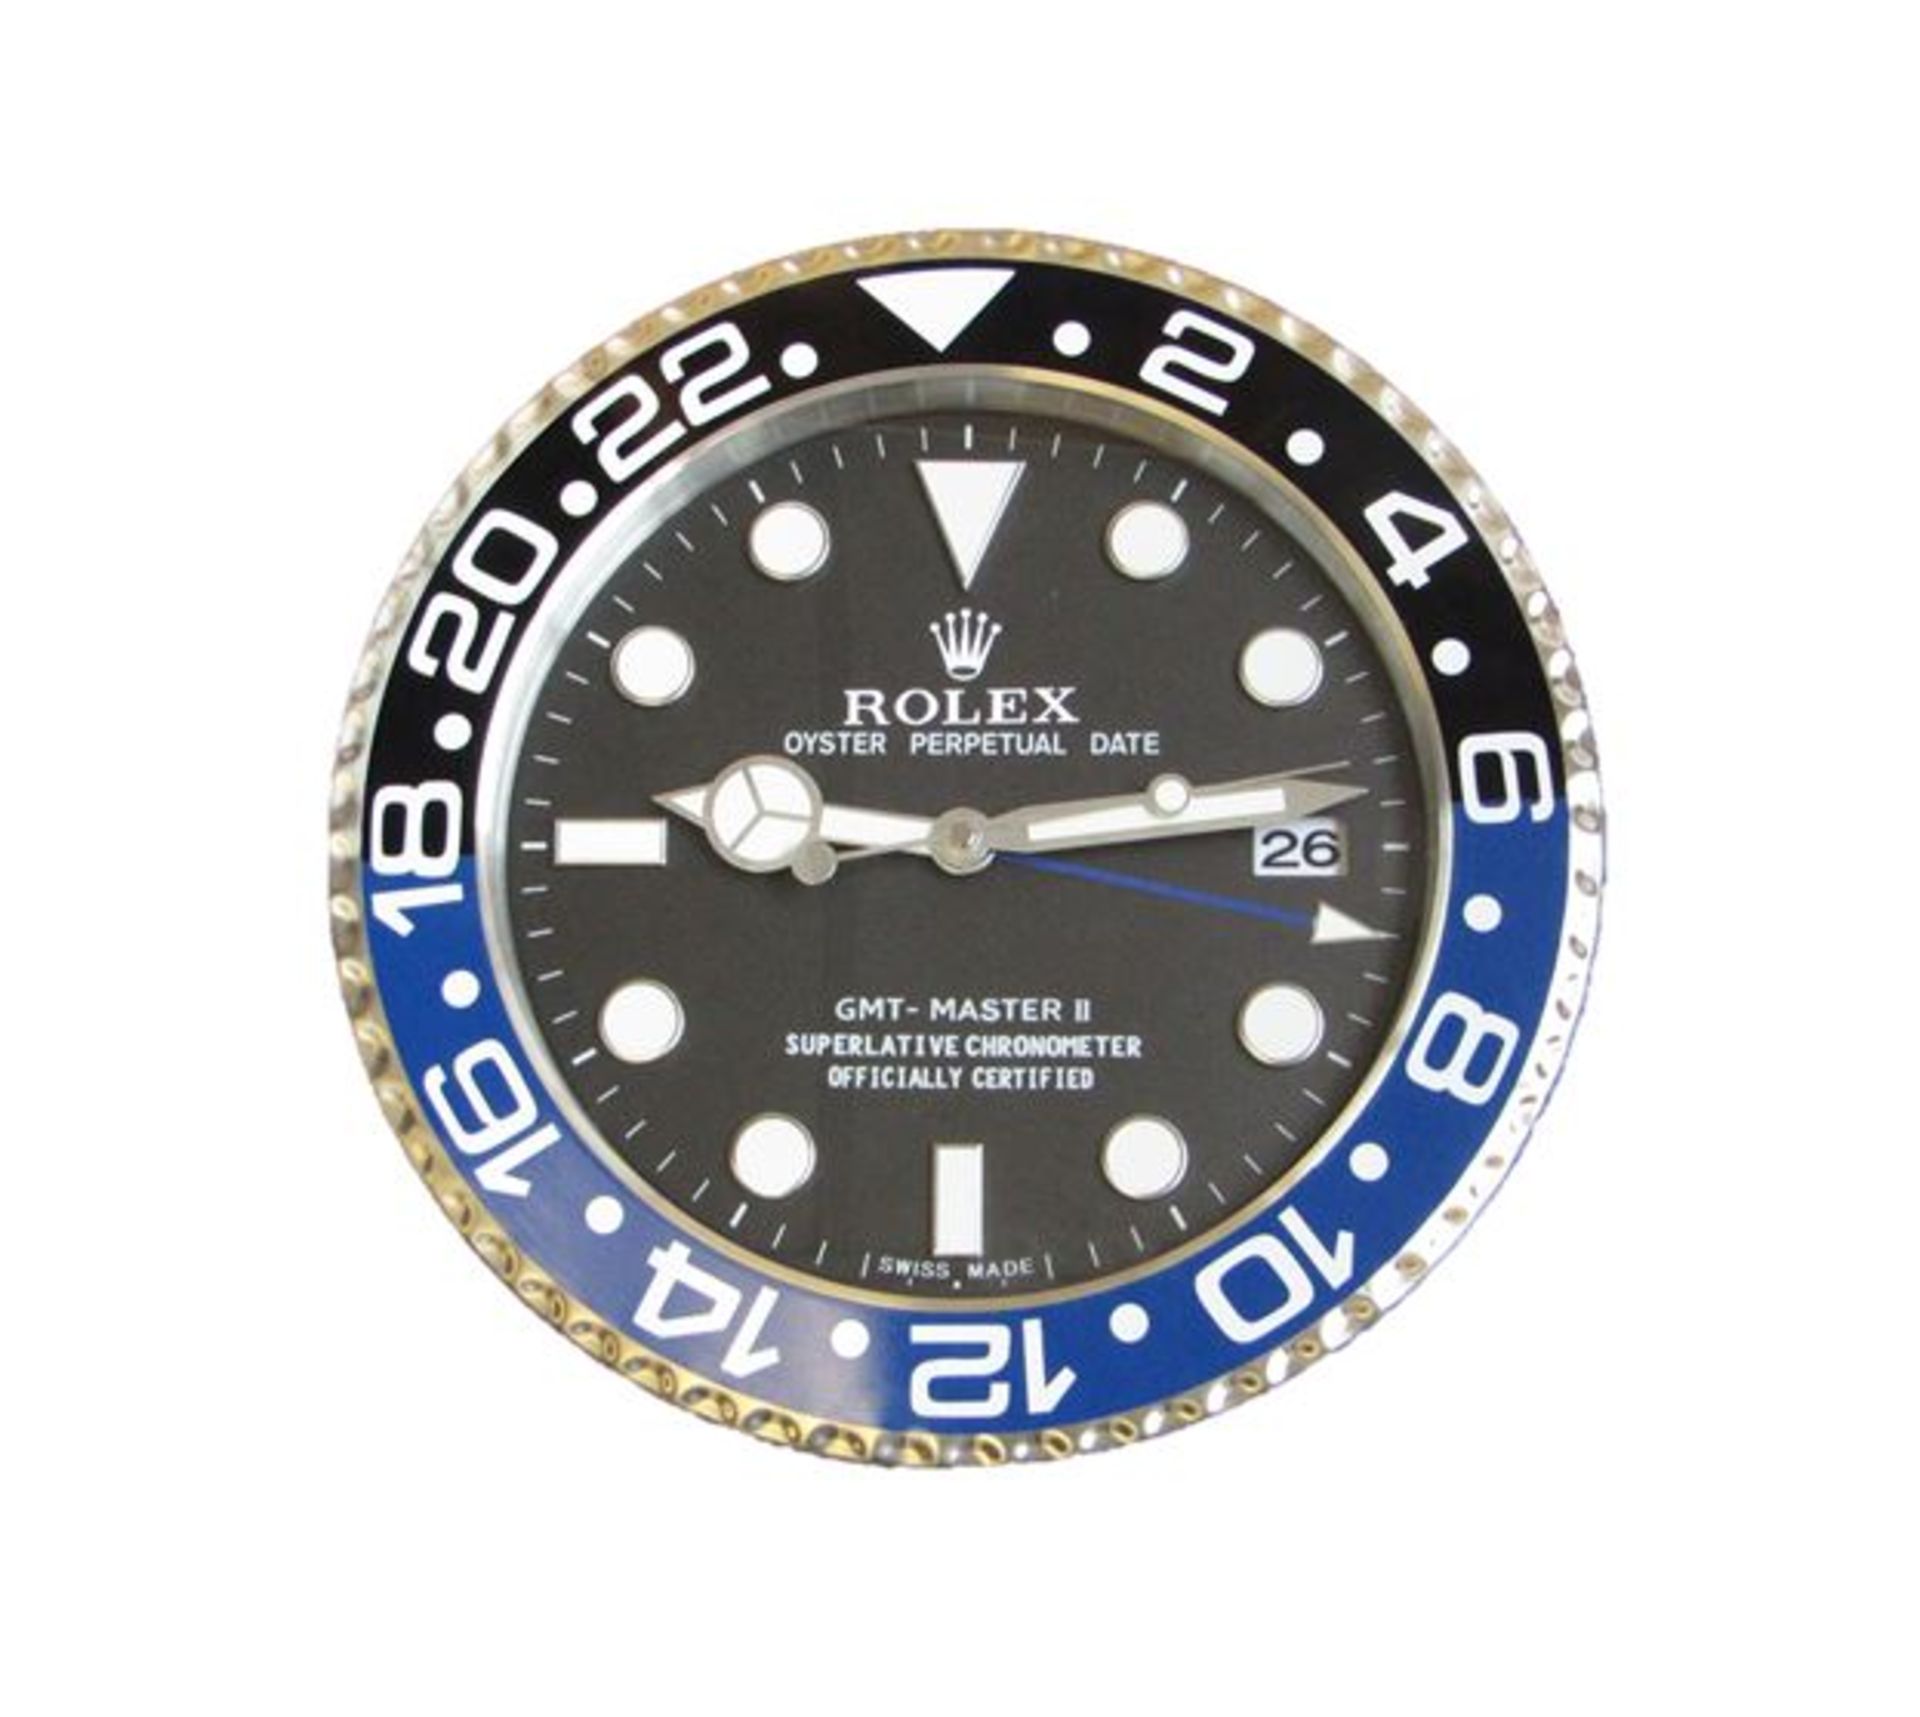 Promotional replica Rolex GMT-Master II Clock in Blue & Black